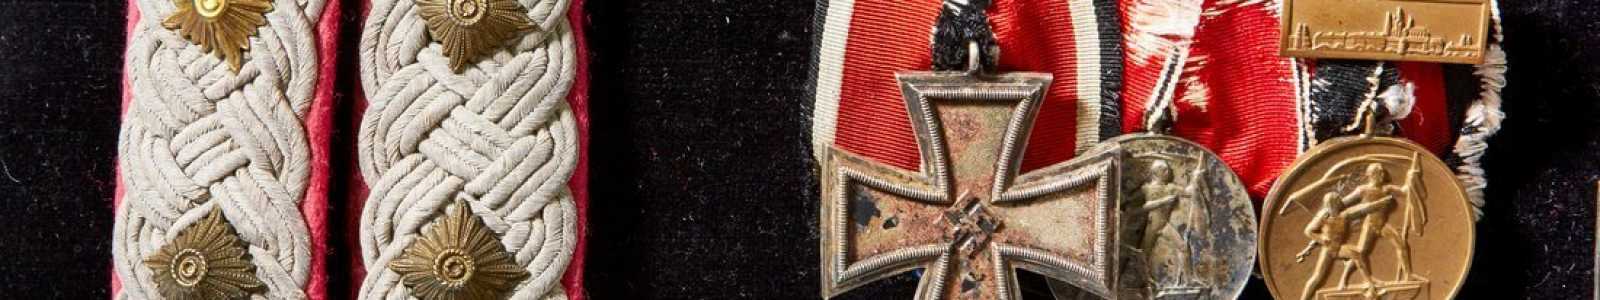 A82r - Немецкая современная история - Ордена и милитария 1919 года